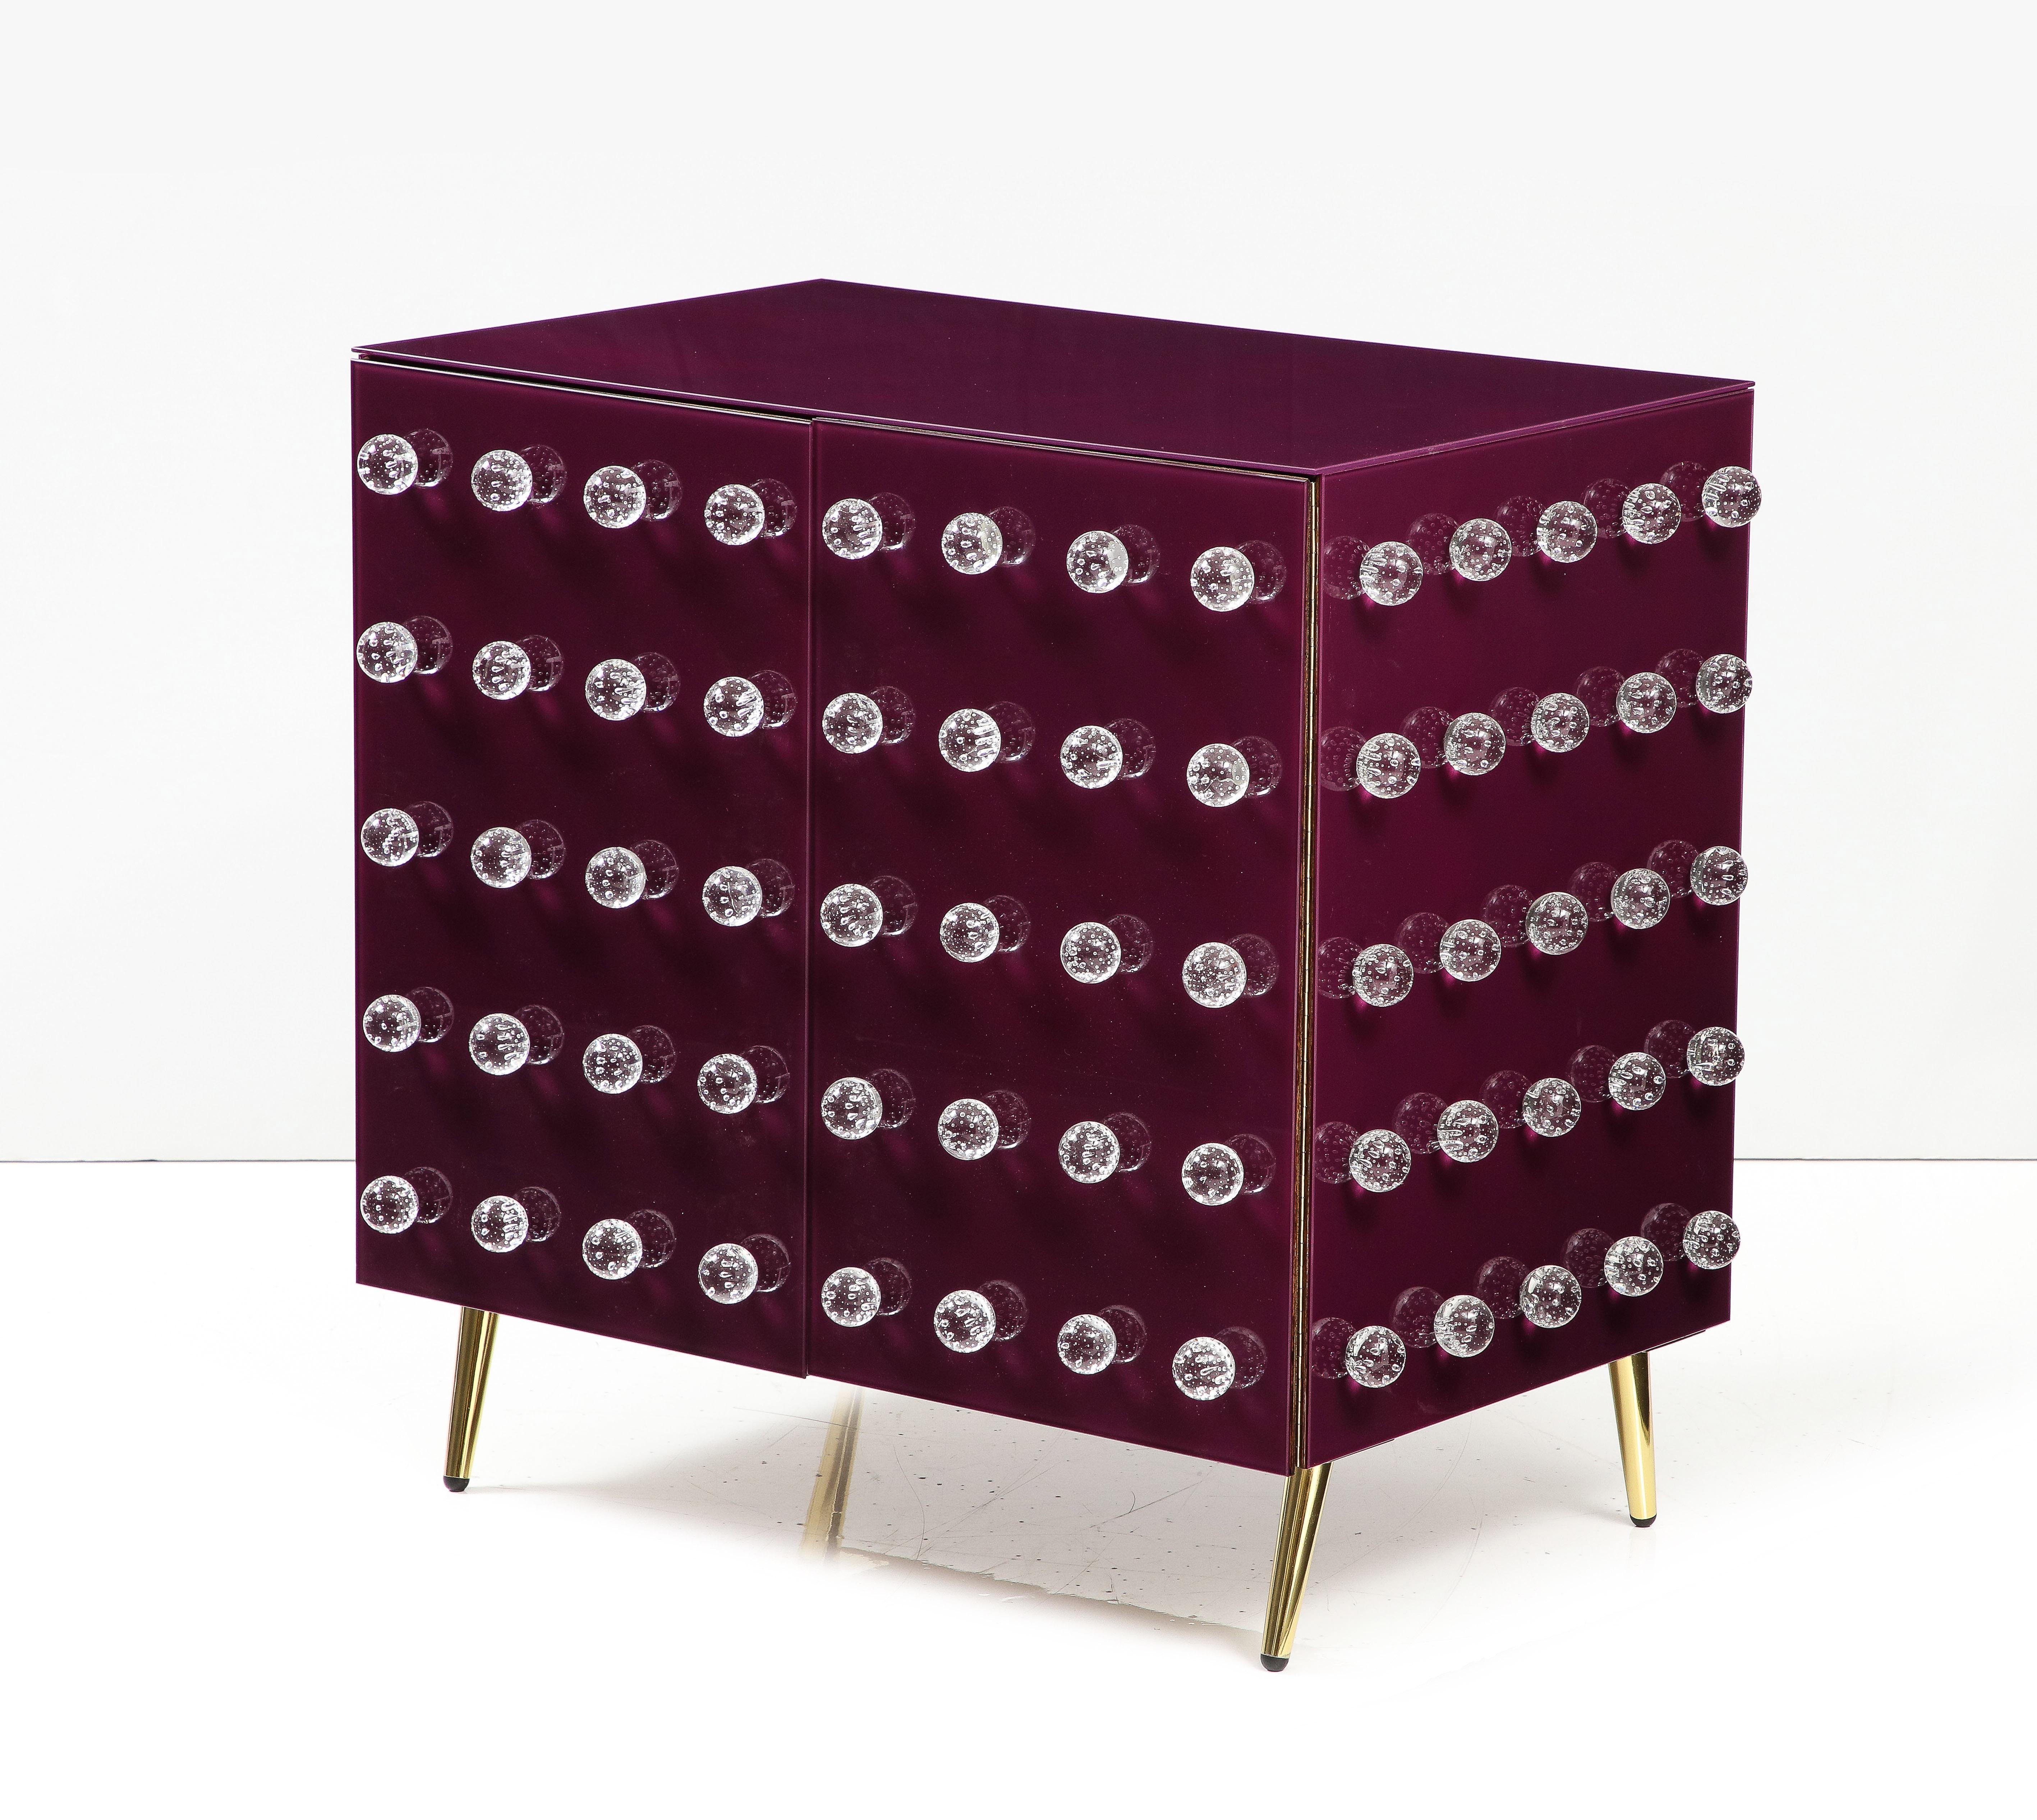 Armoire de cuisine en verre de Murano, design inspiré des bijoux. Cadre en bois de bouleau fabriqué à la main avec du verre de Murano et des pieds en laiton. 

Quatre-vingt-dix sphères en verre de Murano et des incrustations de verre violet sont